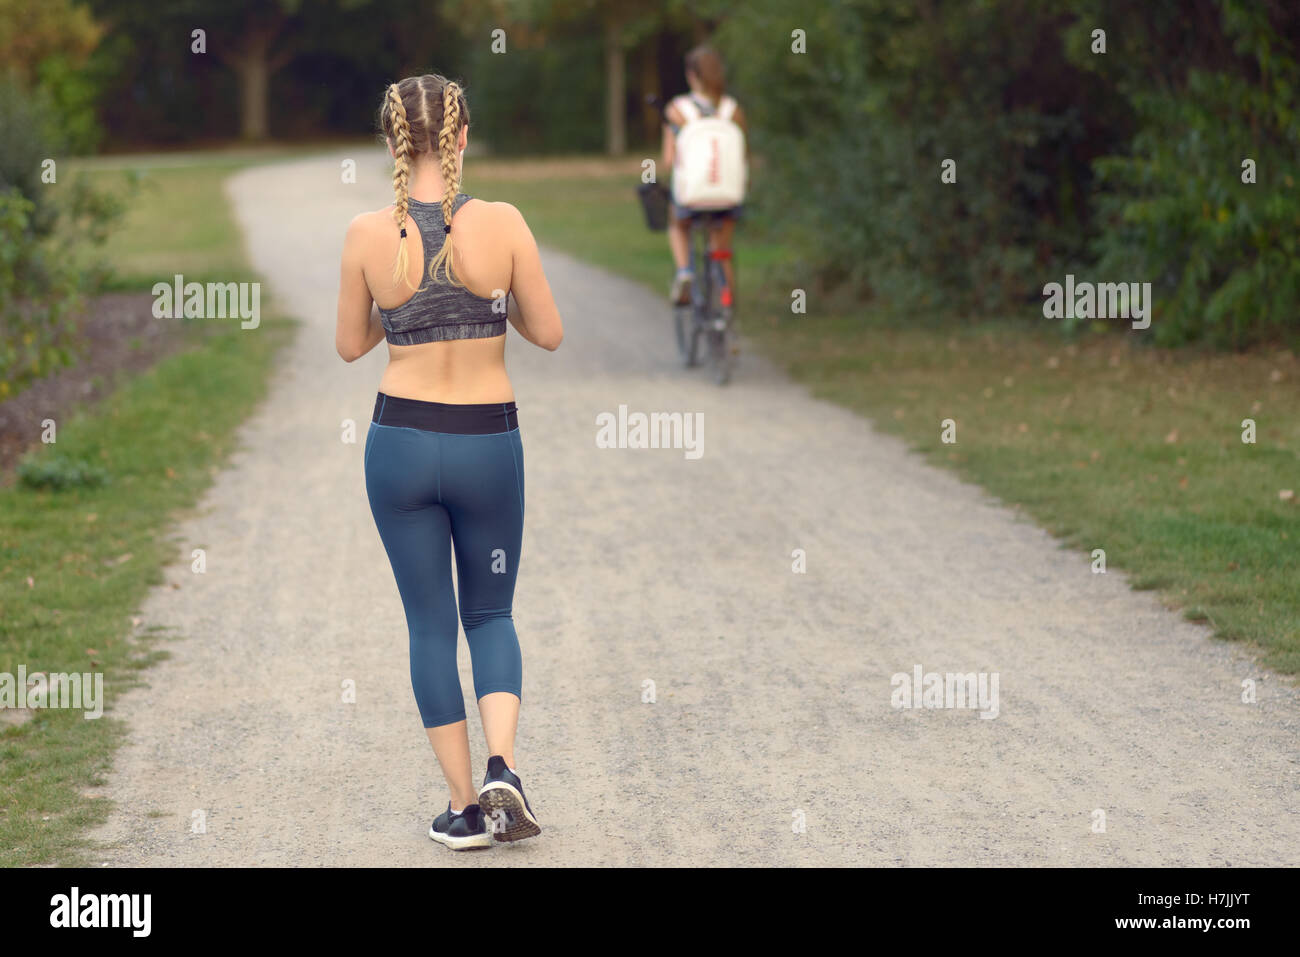 Junge Frau in einem Pfad, Weg von der Kamera entlang einer schmalen Gasse mit einem Radfahrer vor ihr in ein gesunden Leben Joggen Stockfoto